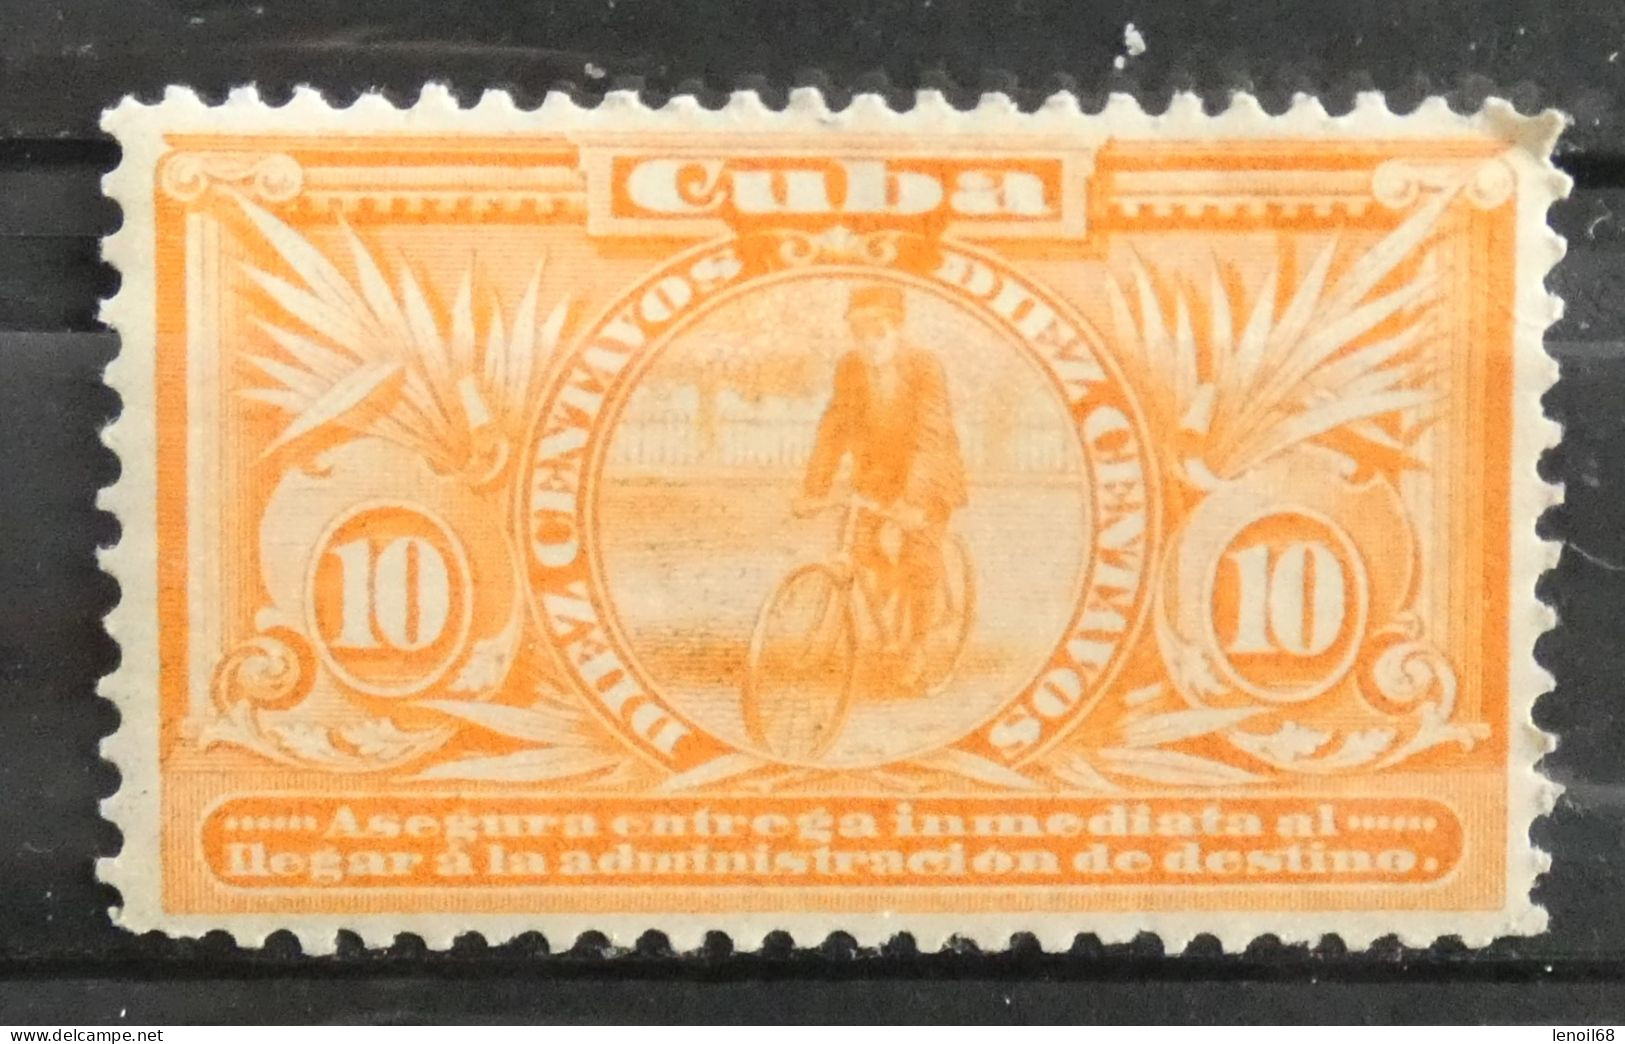 Timbre Cuba 1902 Express 10 Centavos Facteur Neuf Avec Trace De Charnière - Unused Stamps